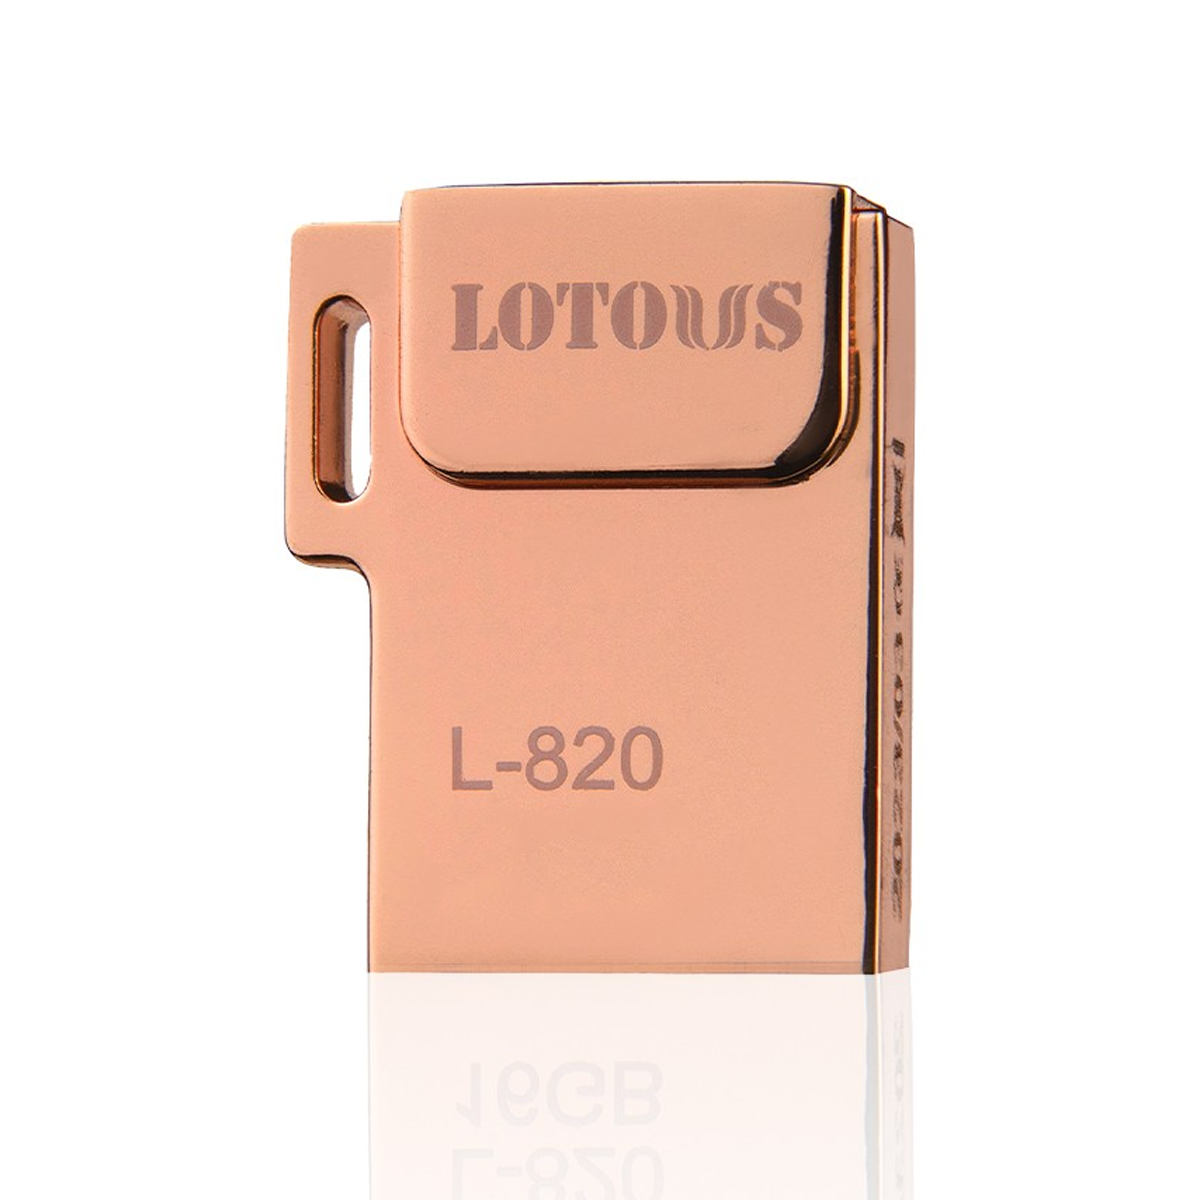 فلش مموری لوتوس مدل L-820 ظرفیت 16 گیگابایت